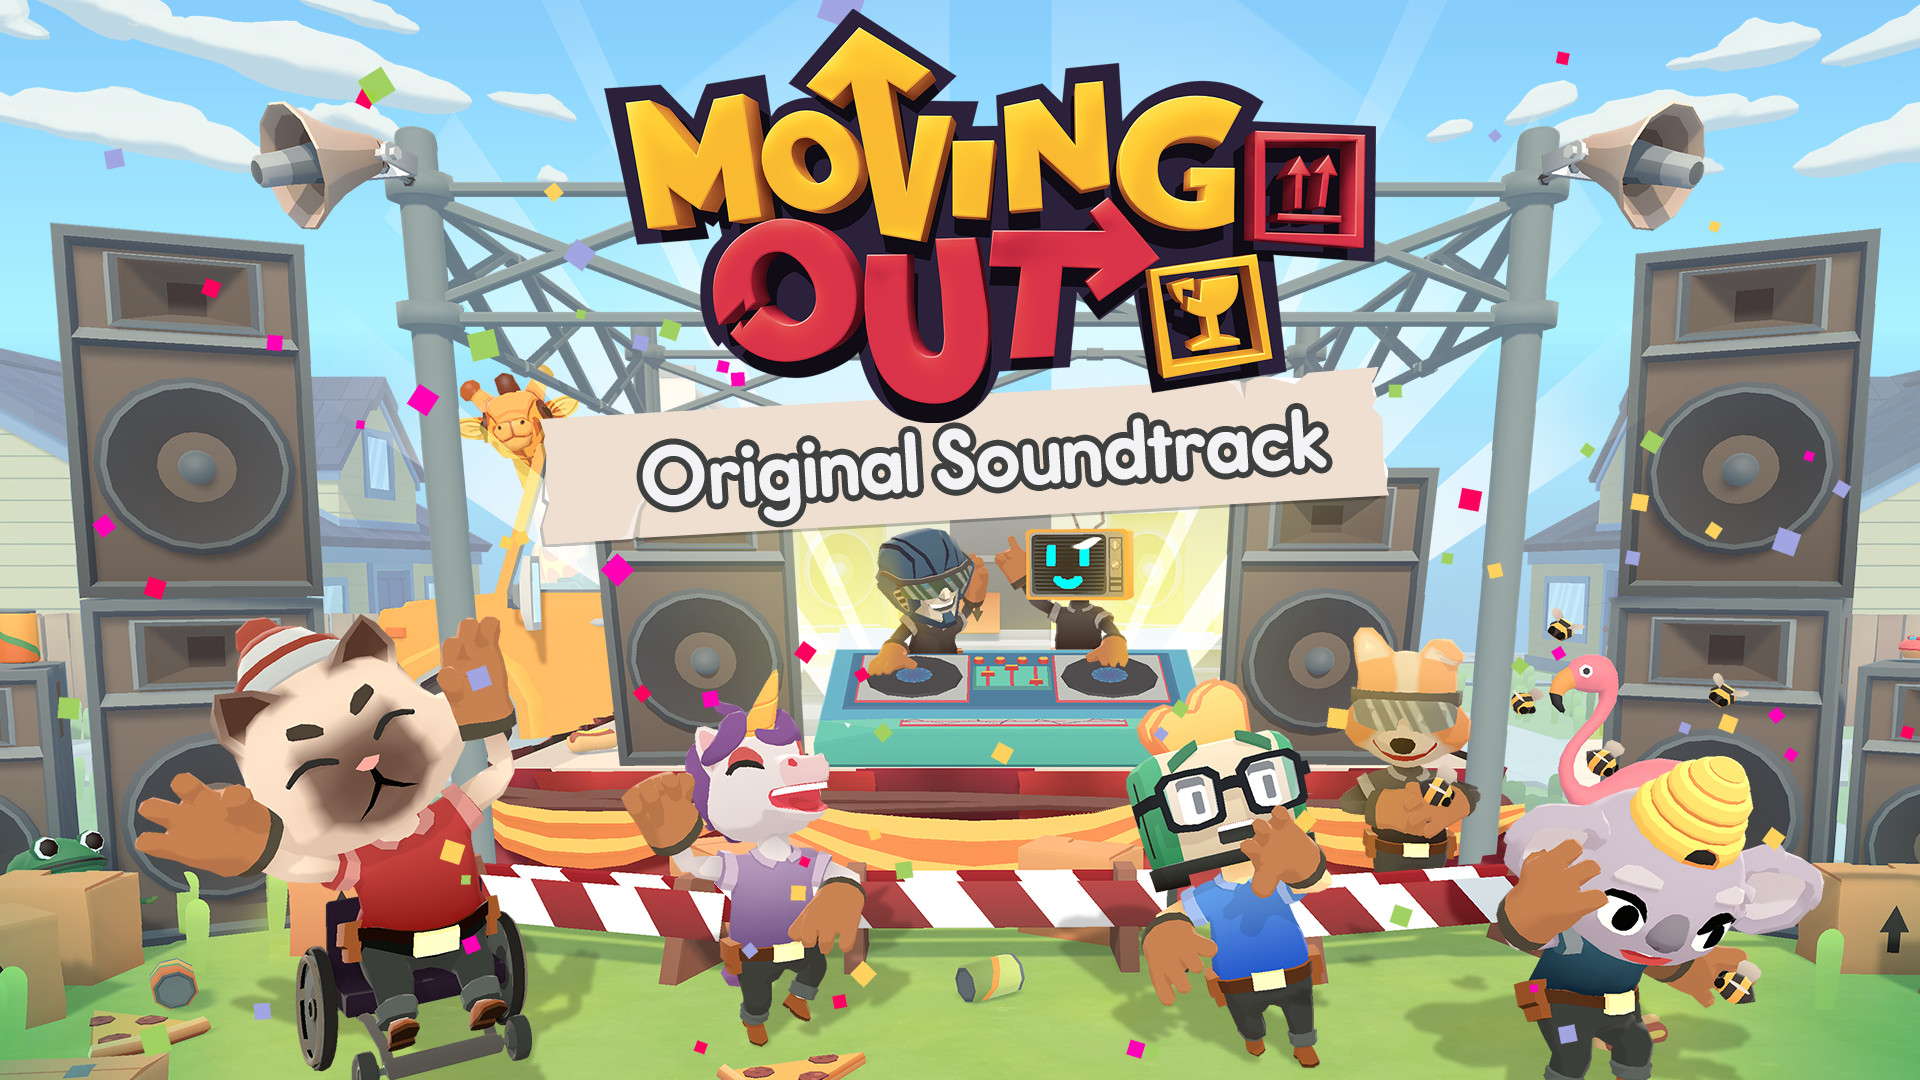 Moving Out - Original Soundtrack DLC Steam CD Key 4.66 USD